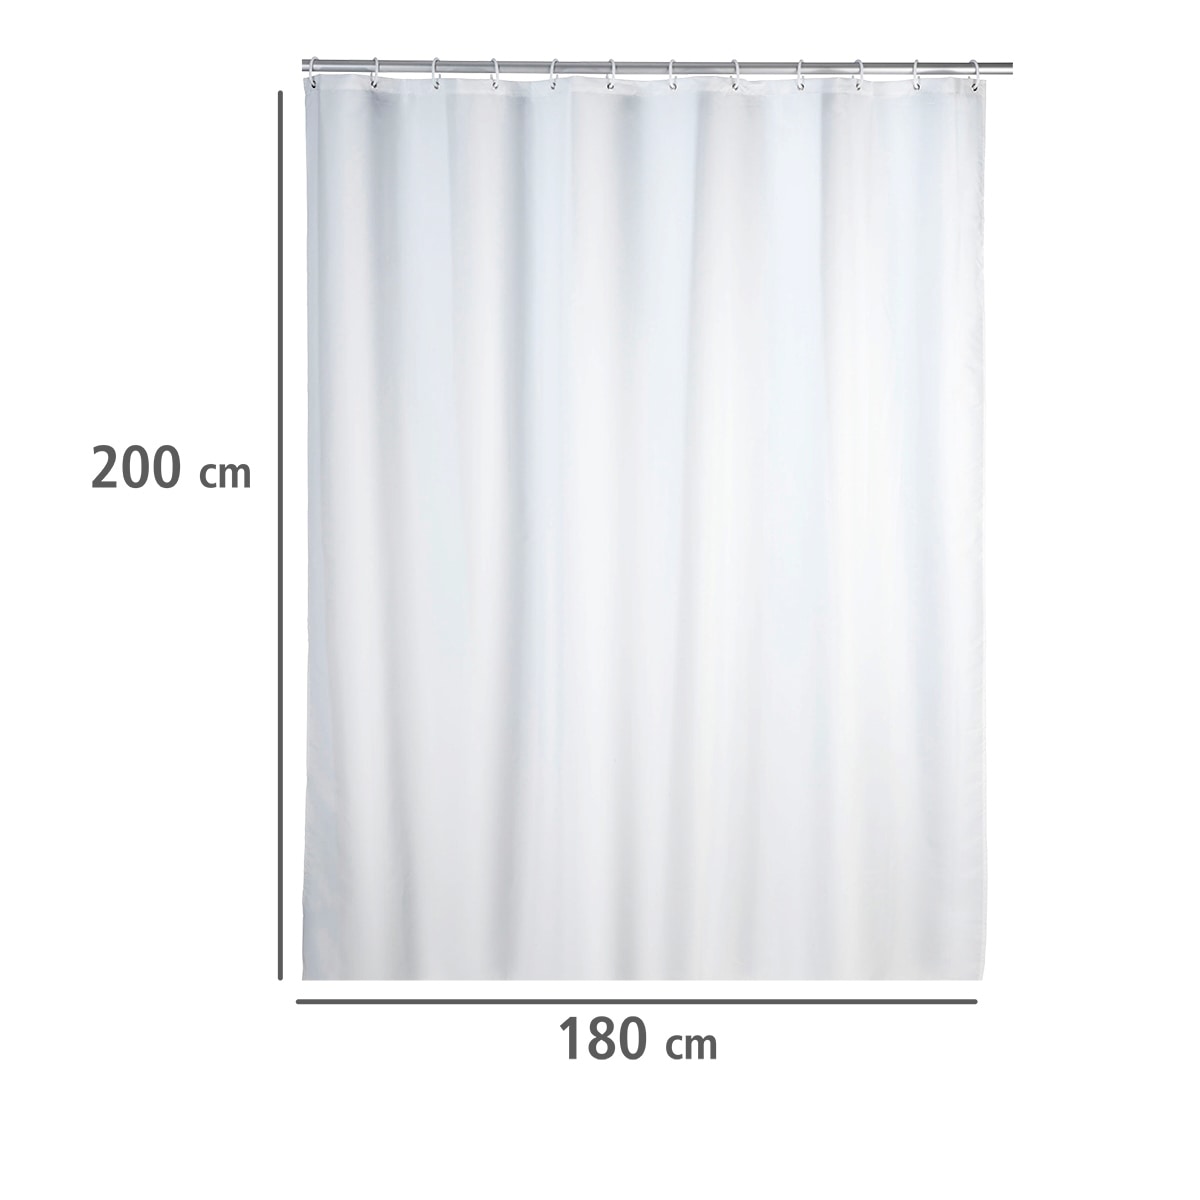 WENKO Duschvorhang »Uni White«, Höhe 200 cm, Polyester, waschbar